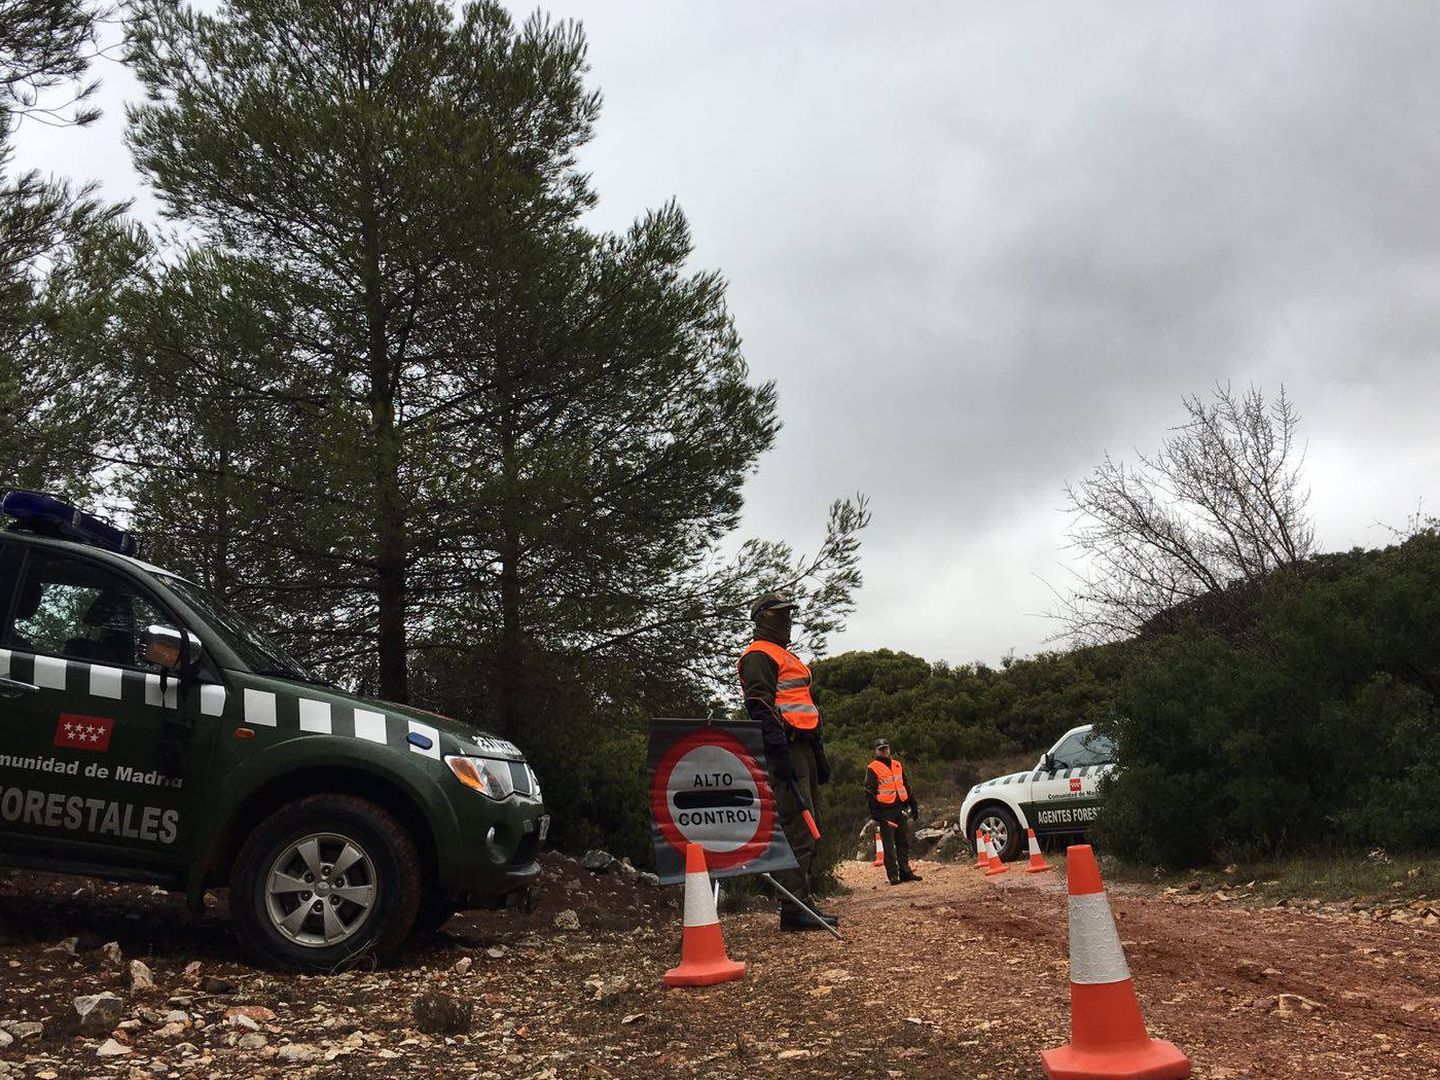 Agentes forestales haciendo un control de tráfico en una zona forestal de Madrid.